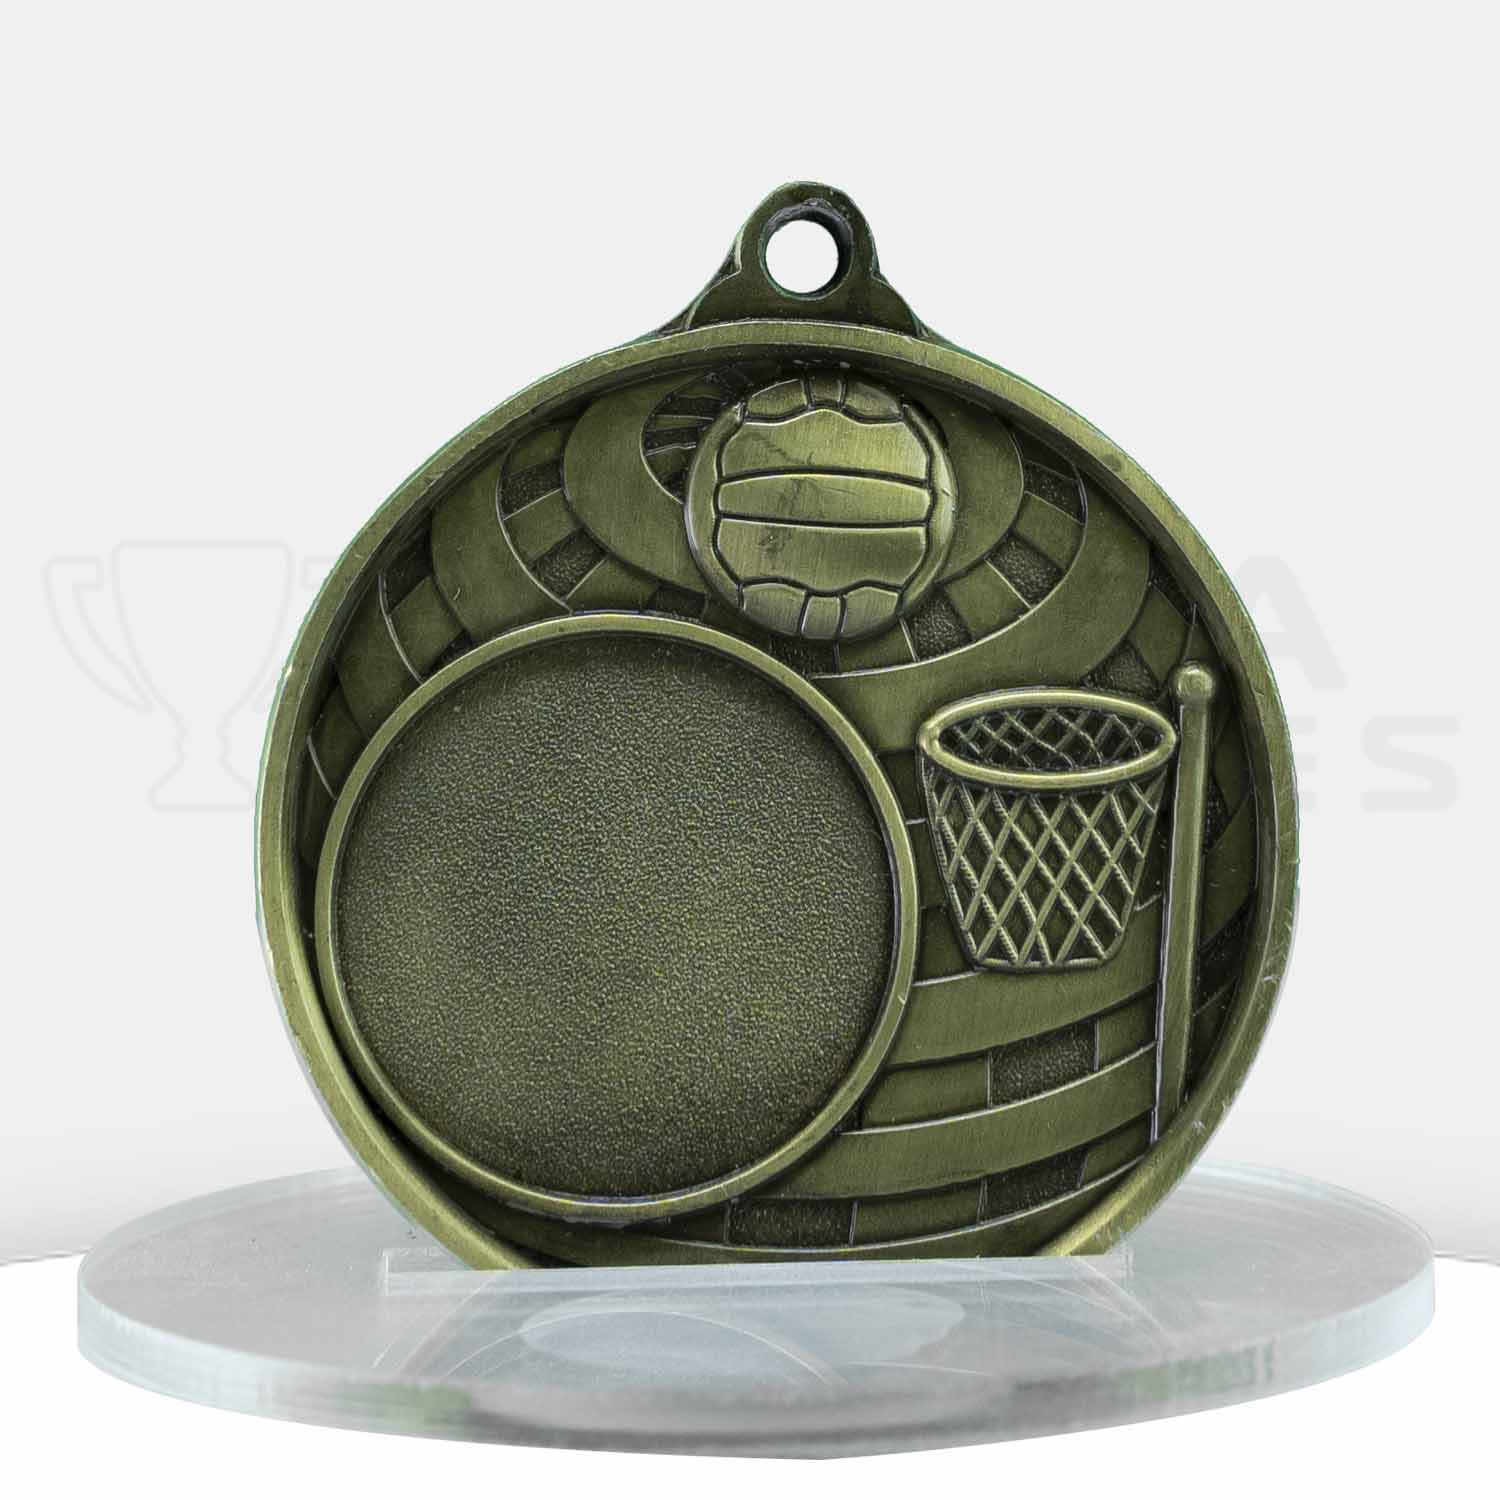 global-netball-logo-medal-1073c-8g-front